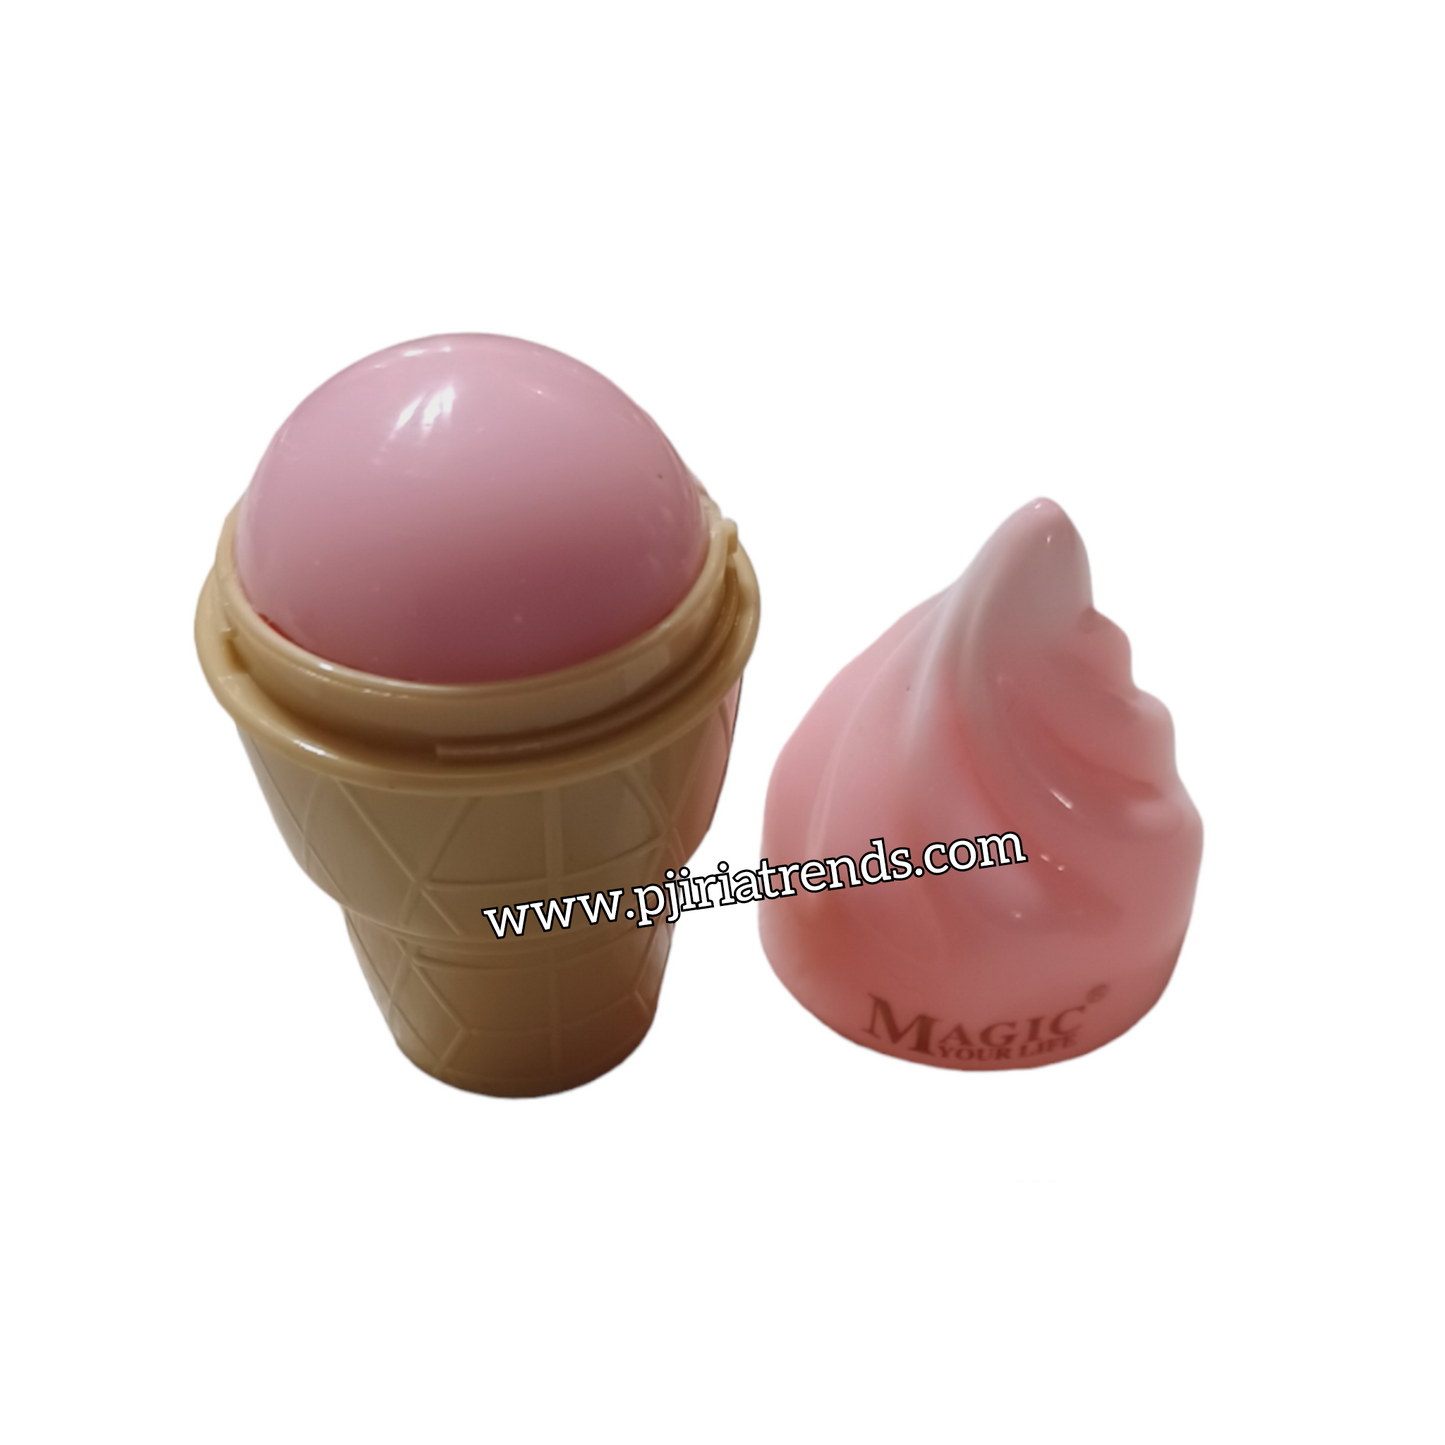 Ice Cream Cone Lip Balm